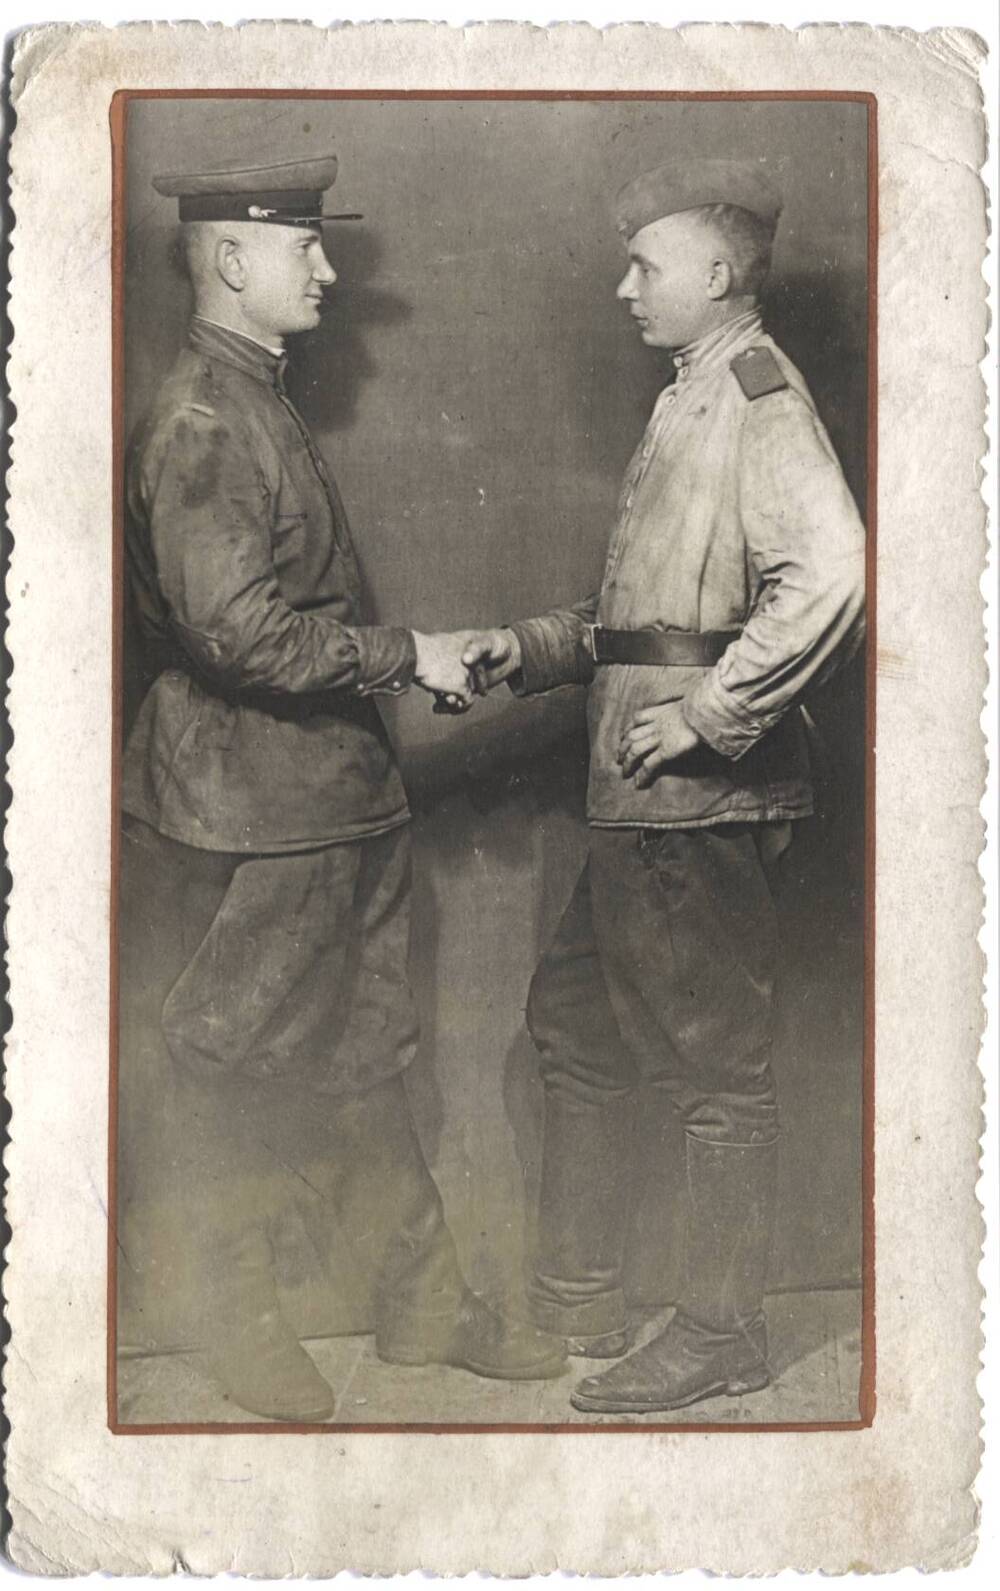 Фотография. Дзюба Кирилл Маркович (слева) здоровается с другом. Германия. 1945 г.